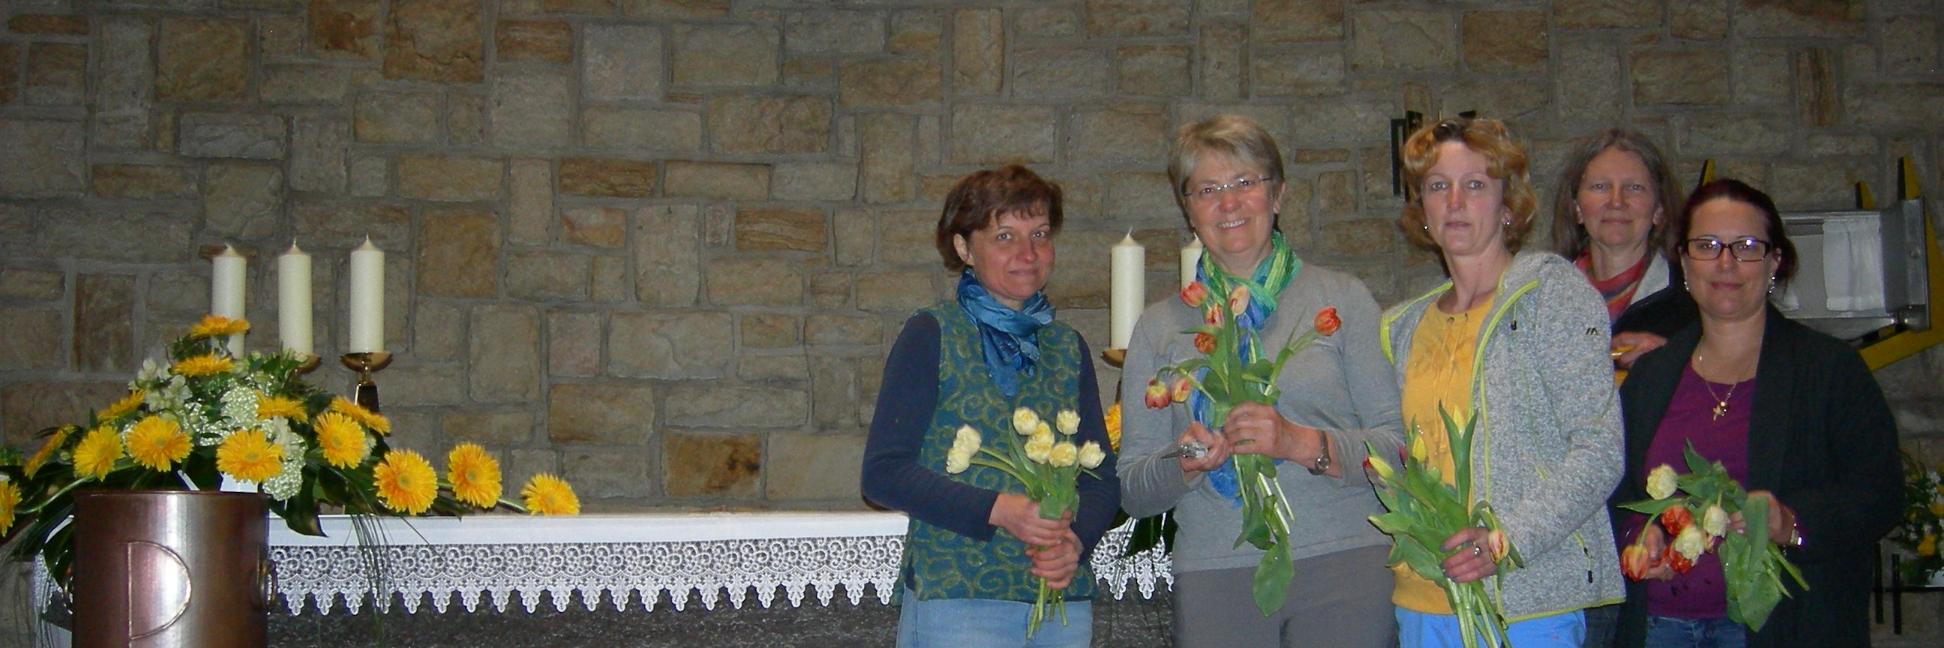 Die Blumenfrauen von St. Bonifatius (c) Kroll